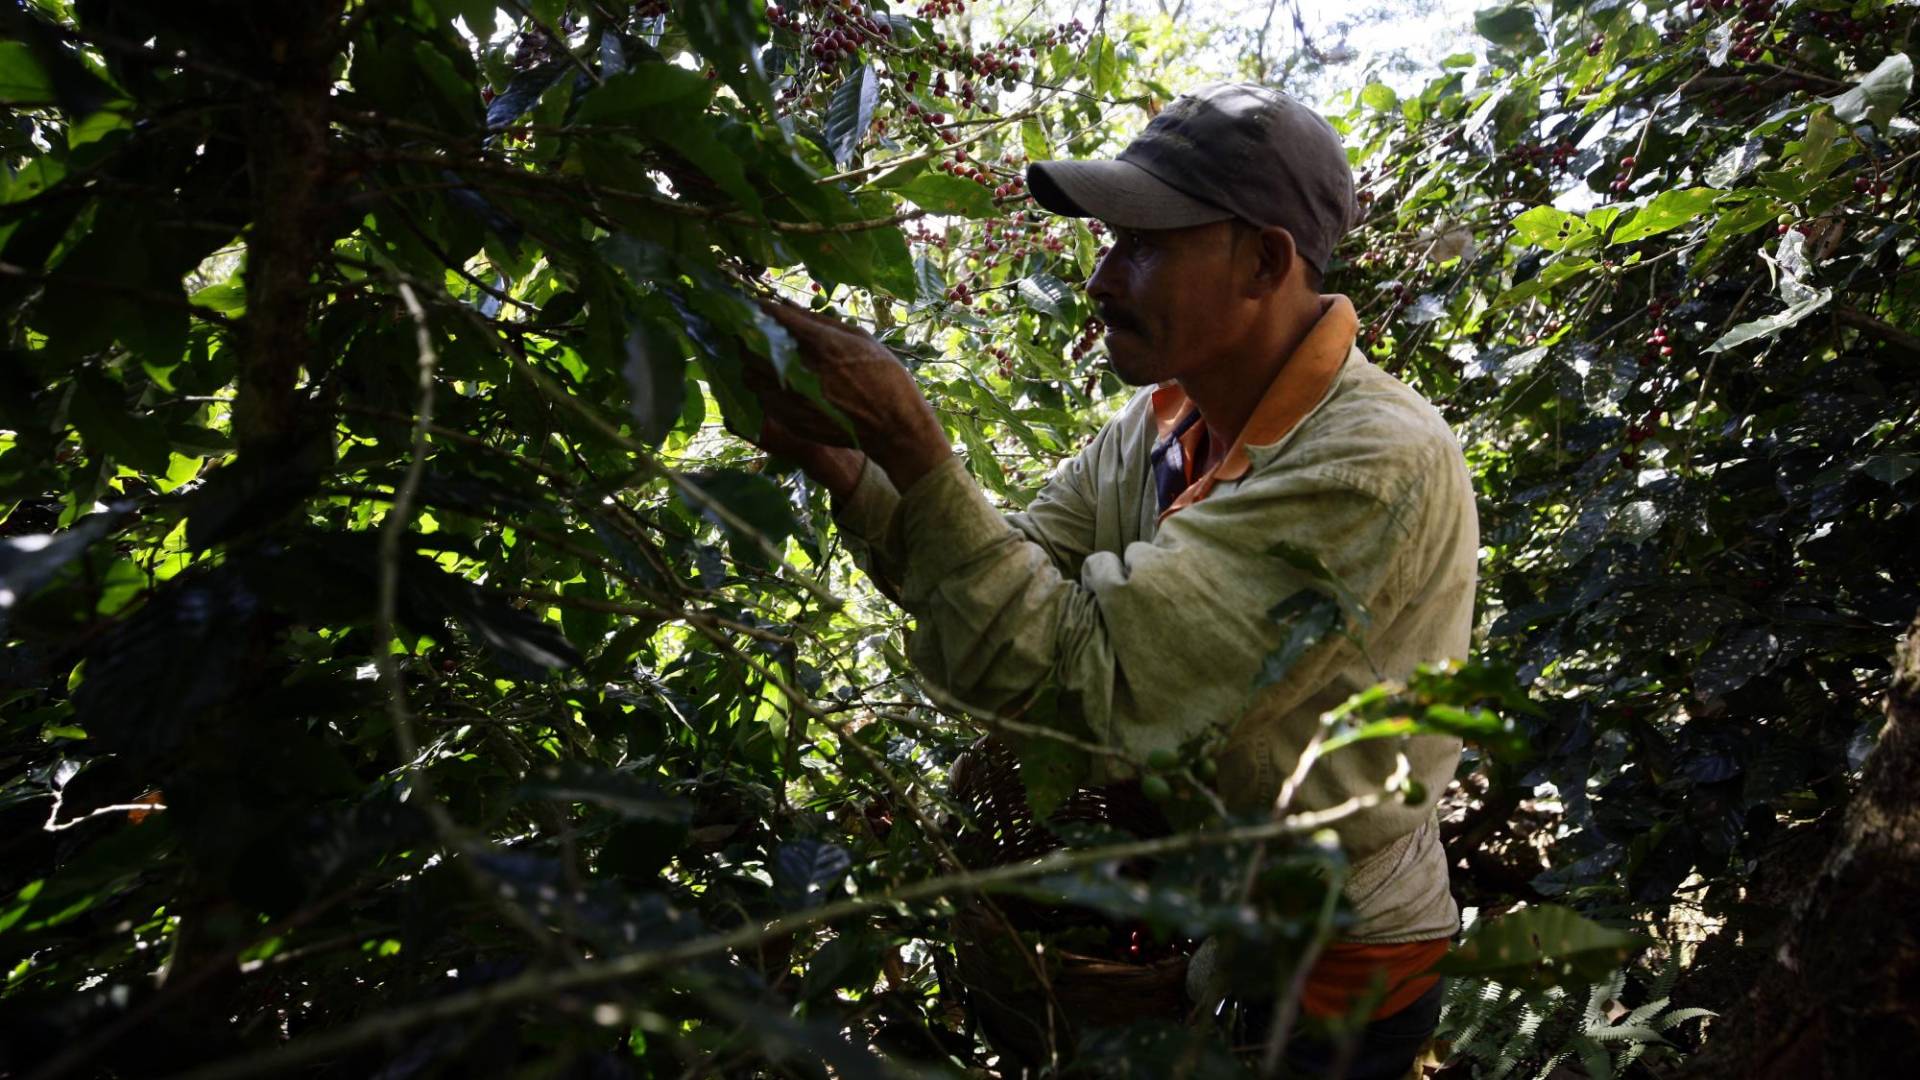 $!Los caficultores están demandando más mano de obra debido a que las plantaciones están cargadas pero no tienen suficientes obreros para poder sacar todo el café y temen tener más pérdidas.